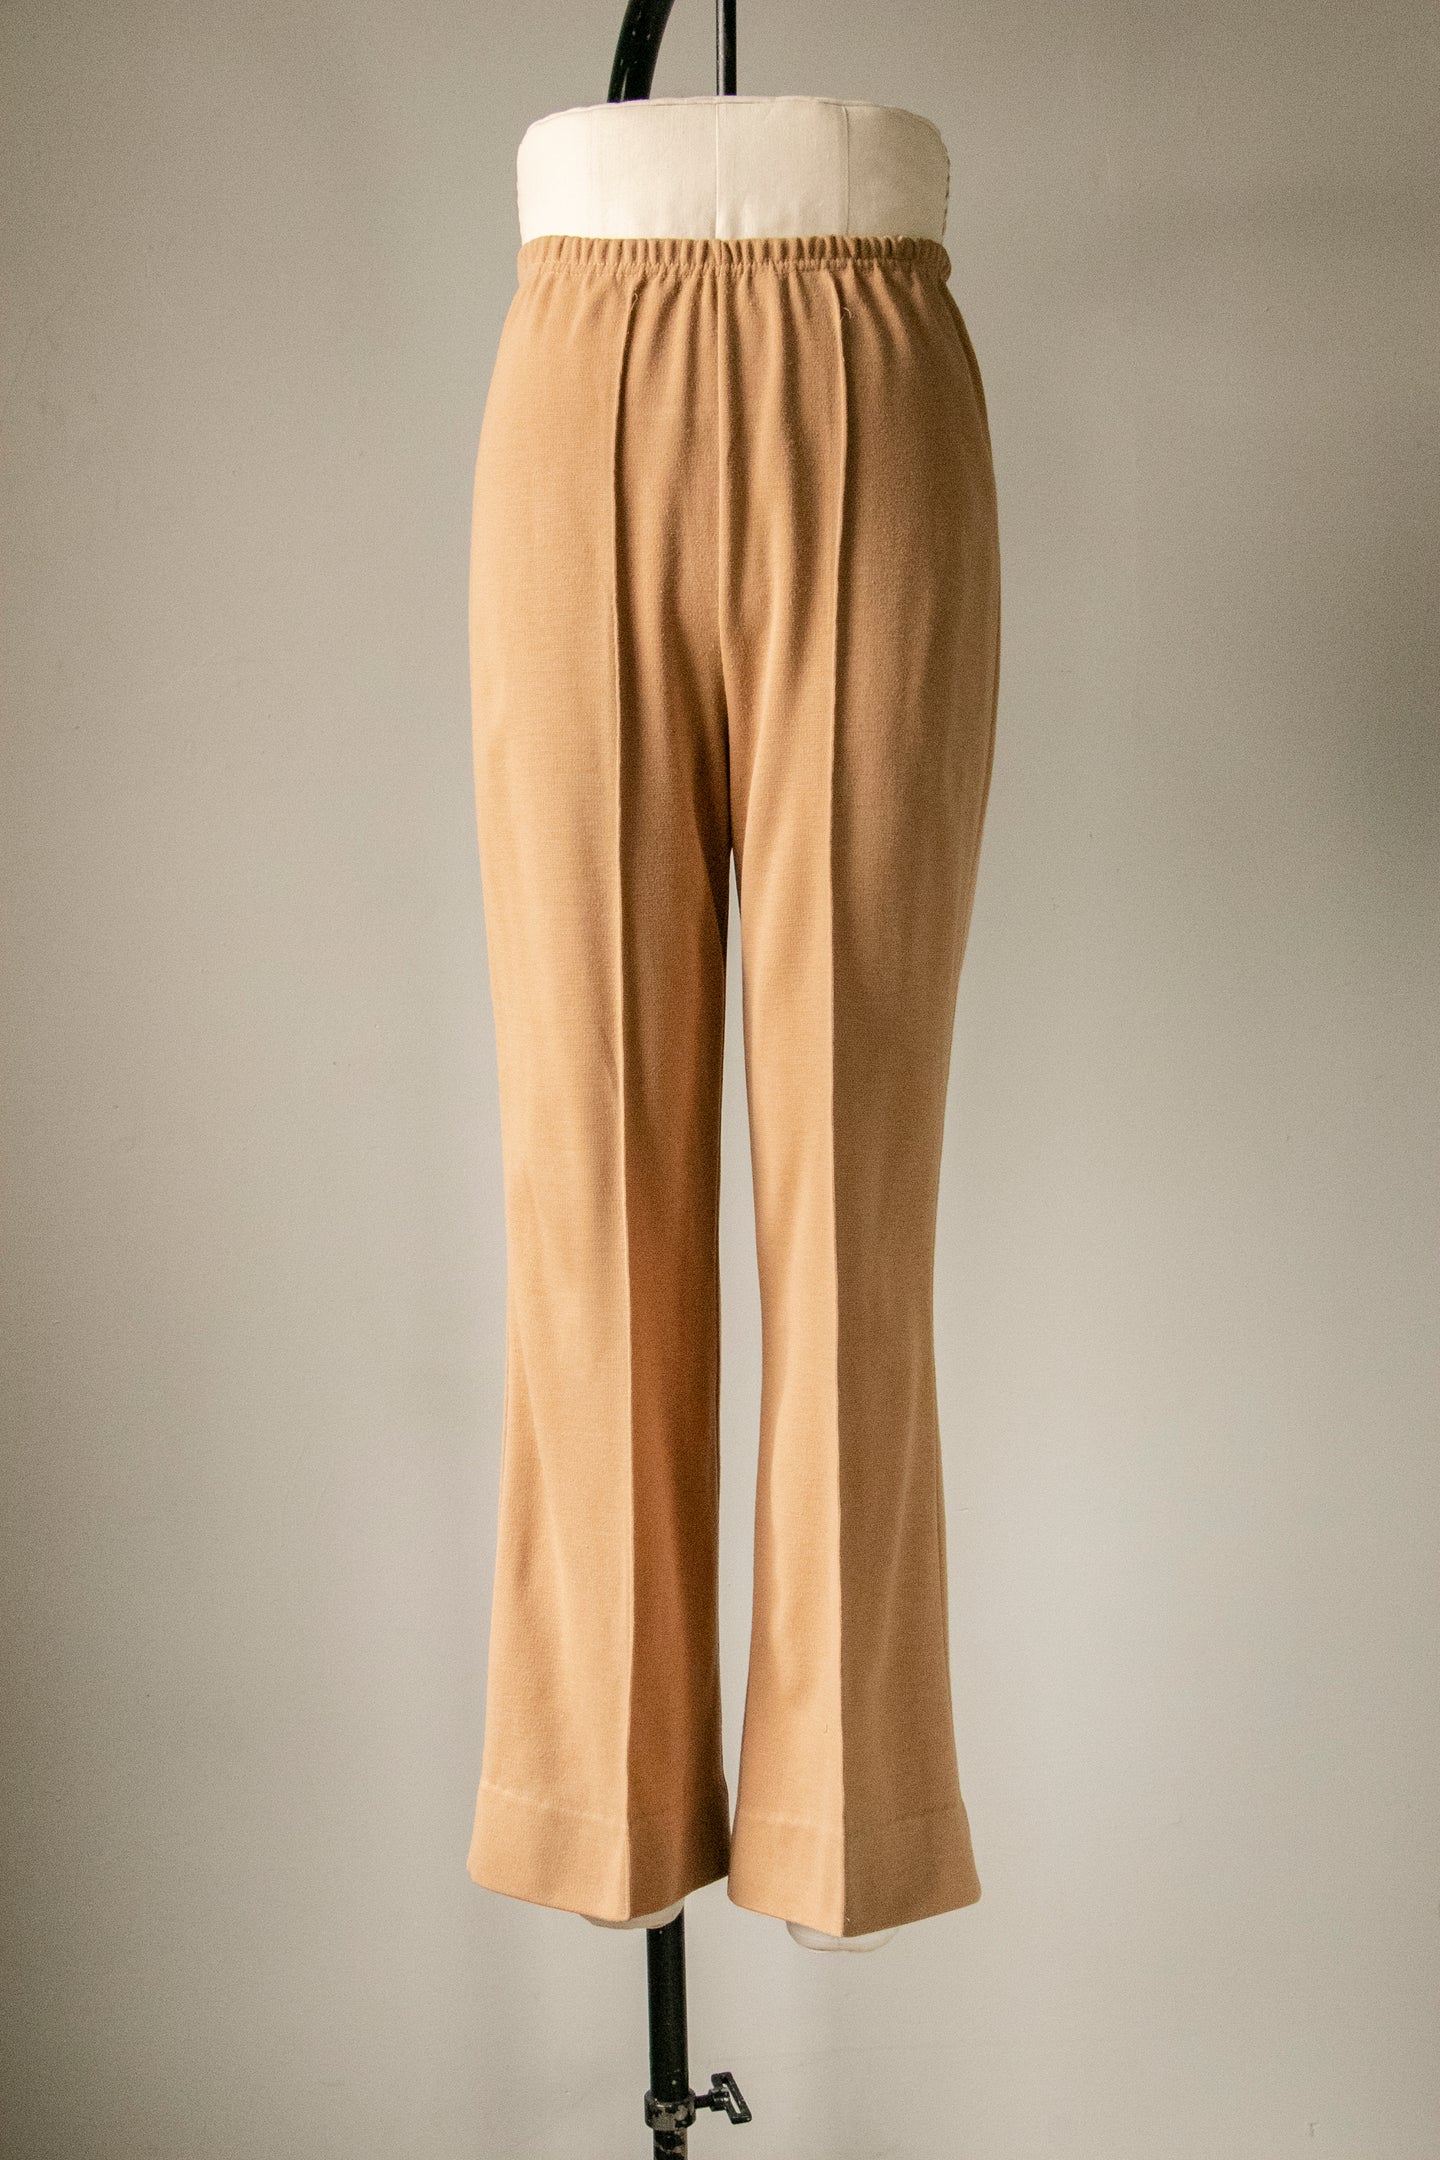 1970s Knit Pants Hight Waist Wide Leg S